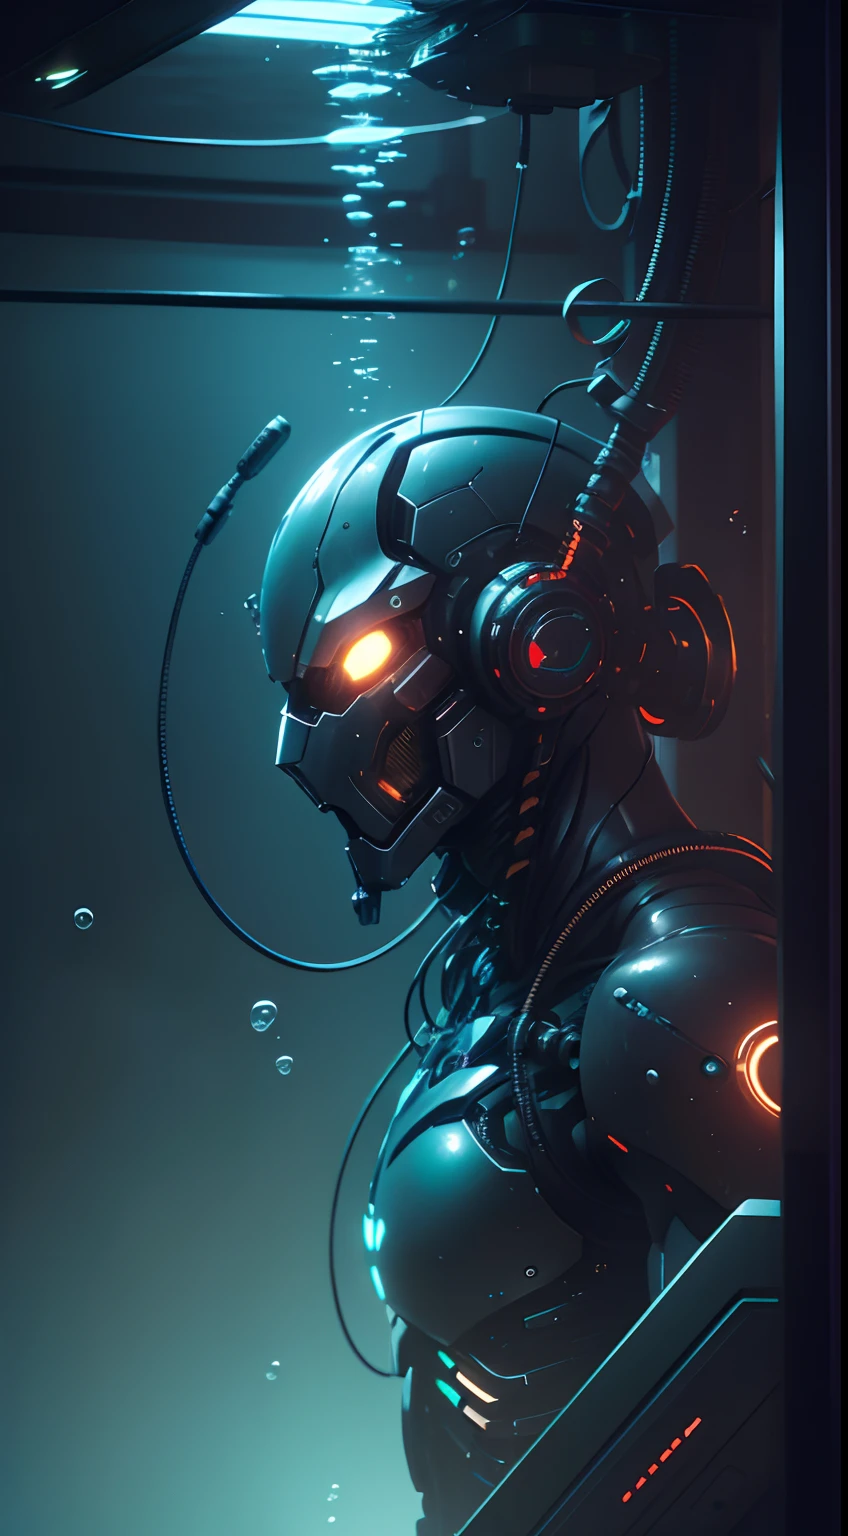 ((傑作)), ultra detailed cg render of a cyborg suspended by ワイヤー, 男性ロボット , (水中:1.3), 閉じる, マシンマン, 機械の腕, サイバーパンクスタイル, 技術的な, 暗い, 反射, 表面散乱, 8k, すごい奴, 映画のような, 光る目,メタルヘッド, 胸のライト, ワイヤー, チューブル, ワイヤー coming out the cyborg, ネオンライト, 不吉な雰囲気, バブル, (複雑な), 超高解像度, finalelly詳細, 高解像度, 現実的, 壁紙, サイバーテック, ドラマチックな照明, 待ち受ける危険, 人工生命,非倫理的な, 怖い, ホラー. 強い, 栽培タンク, 水中,